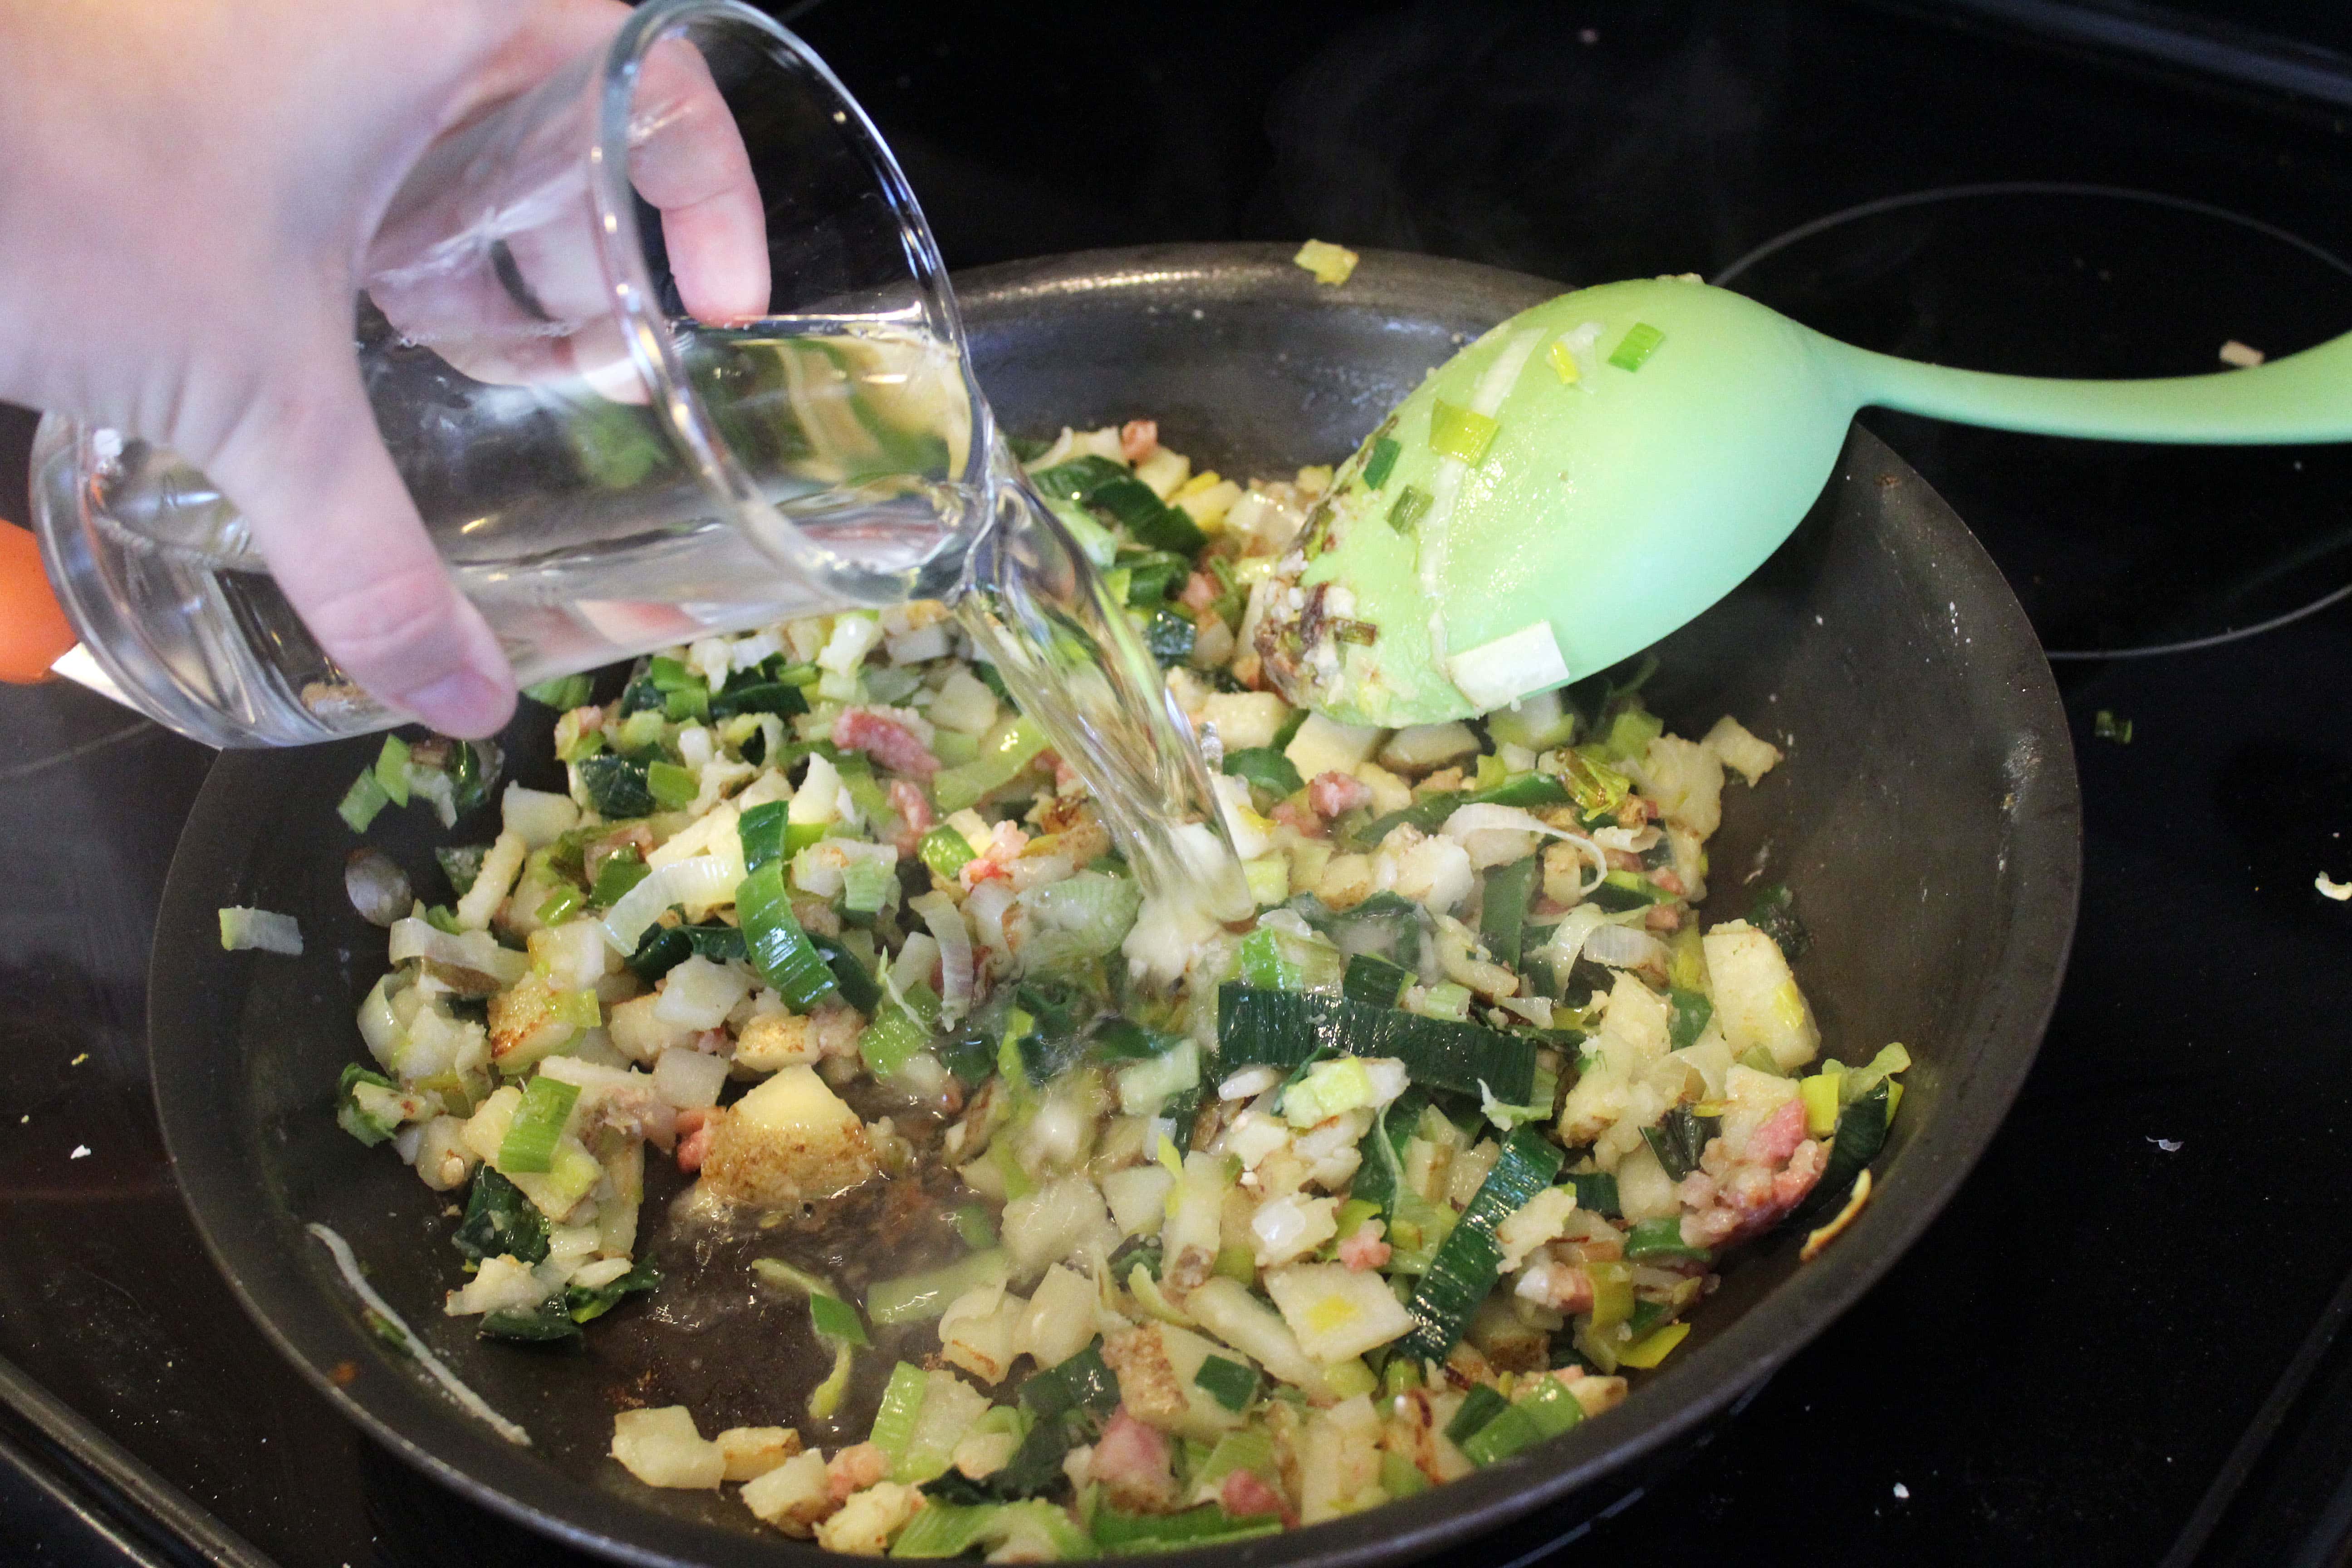 Add wine to garlic and veggies